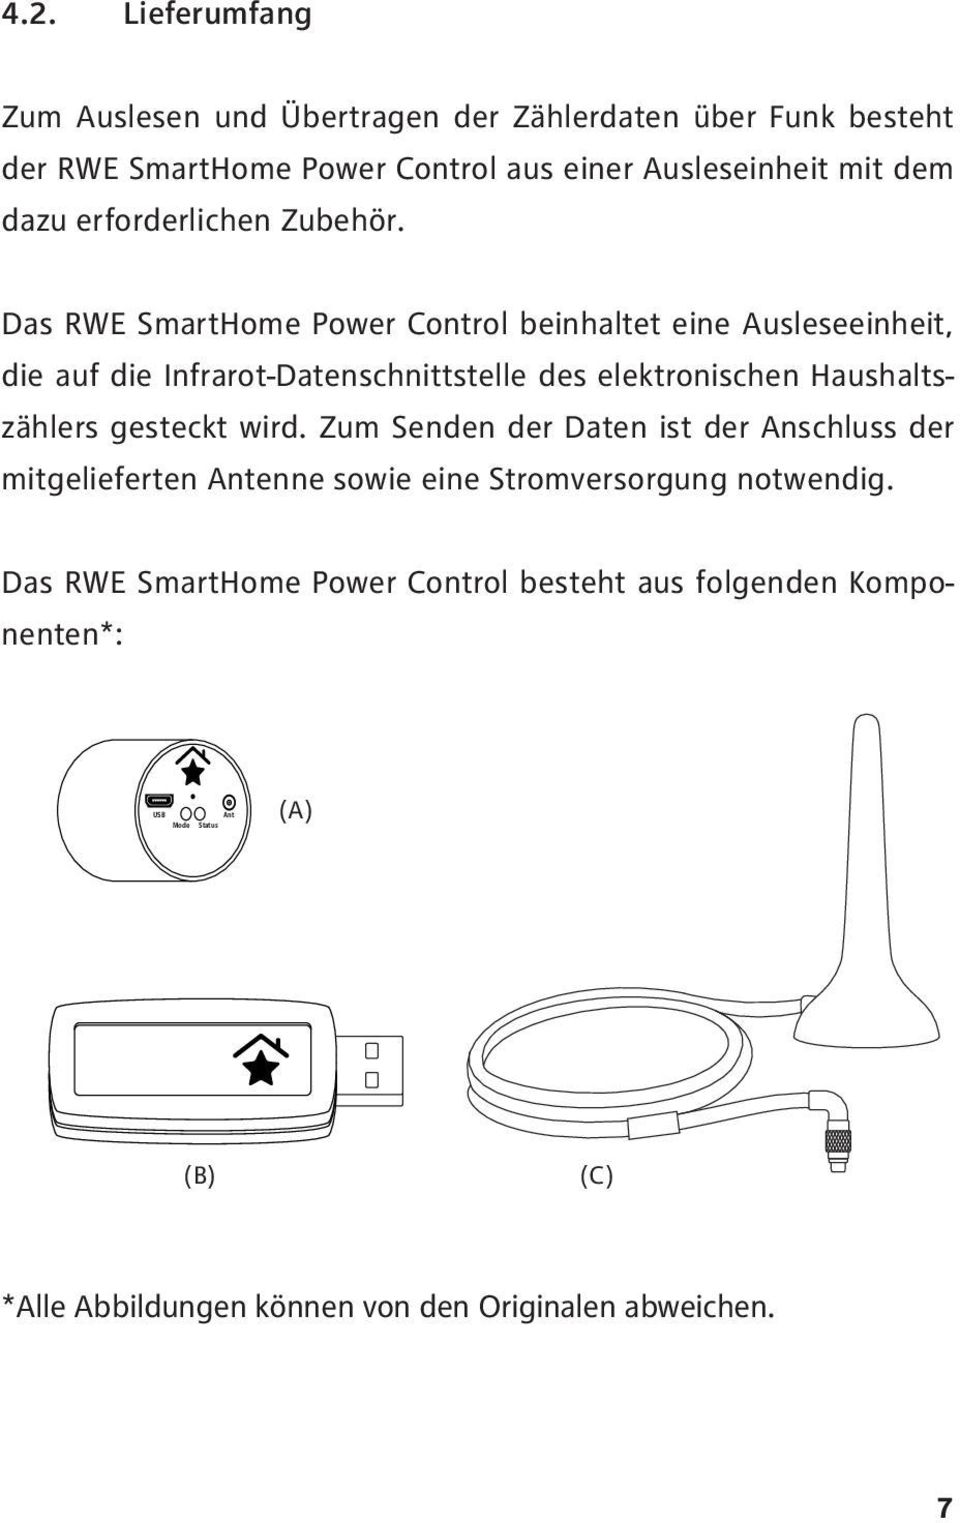 Das RWE SmartHome Power Control beinhaltet eine Ausleseeinheit, die auf die Infrarot-Datenschnittstelle des elektronischen Haushaltszählers gesteckt wird.